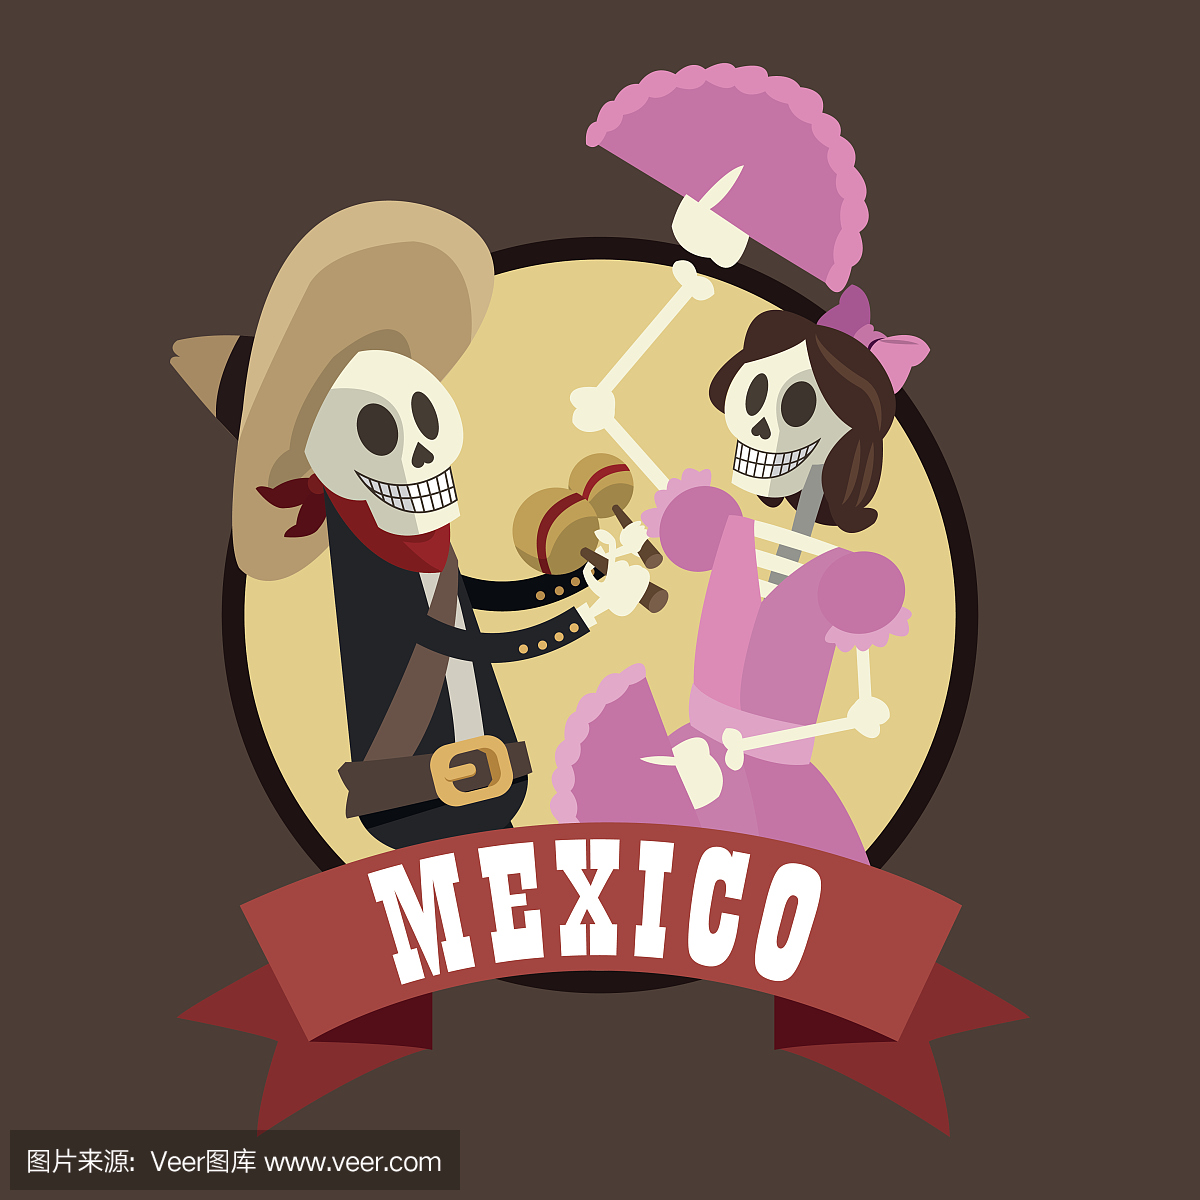 墨西哥文化,墨西哥人的,墨西哥文明,墨西哥节日